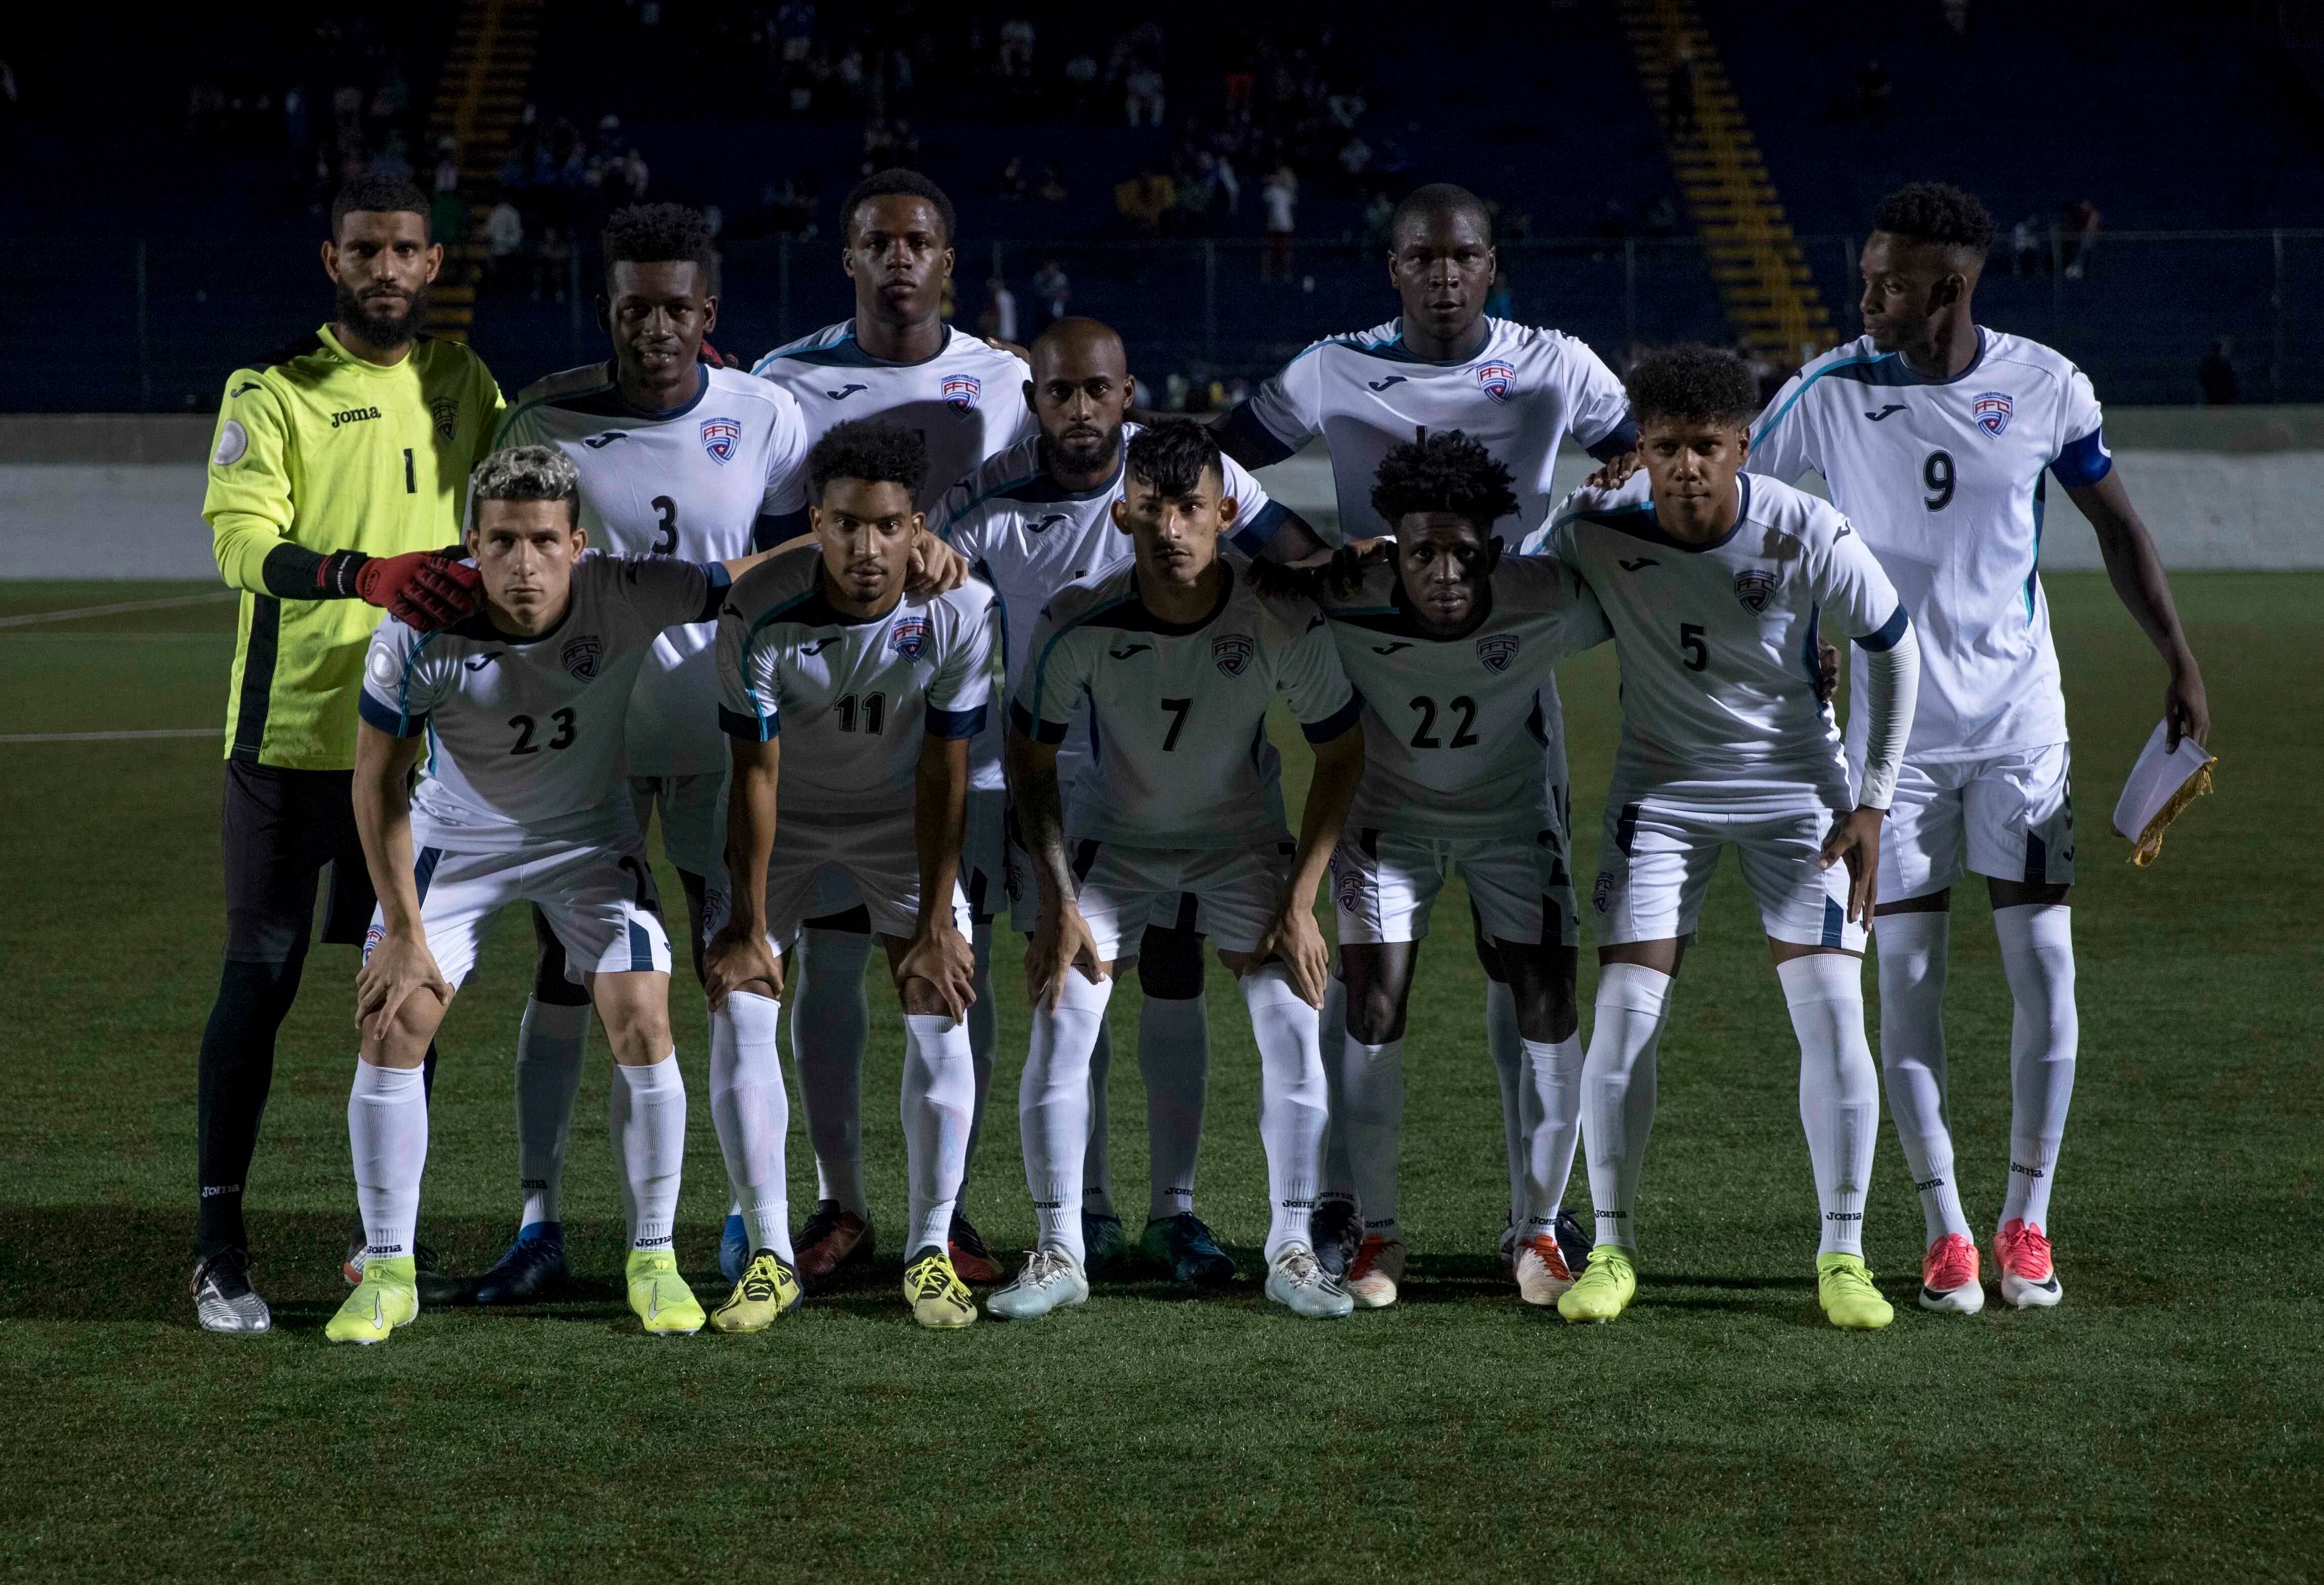 Foto de archivo del plantel titular de la selección de fútbol de Cuba en un partido en Managua, Nicaragua (EFE/Jorge Torres)